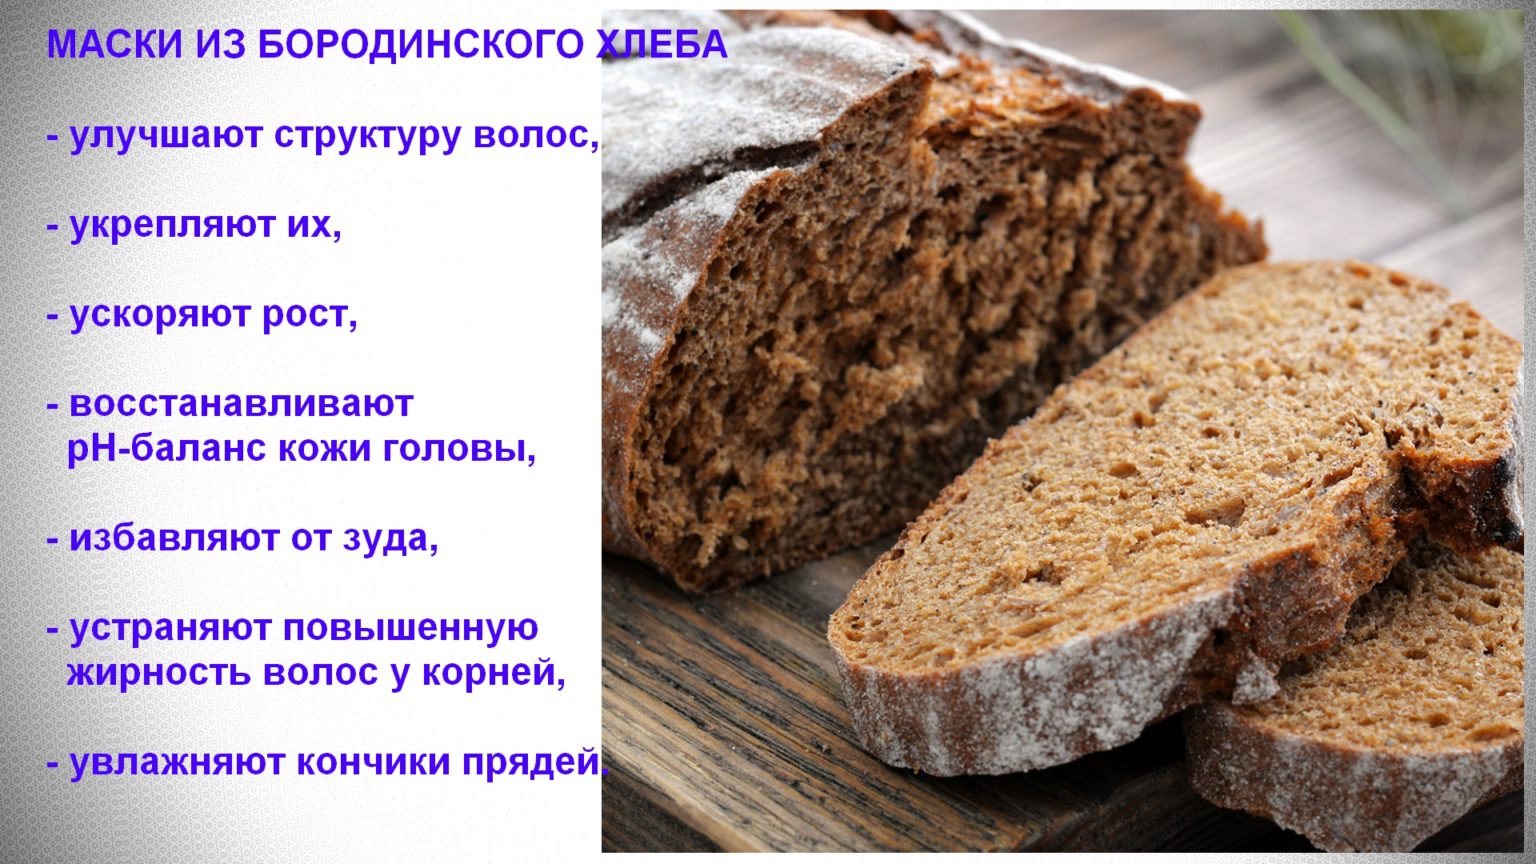 Черный хлеб для кормящей мамы: можно или нельзя в первый месяц